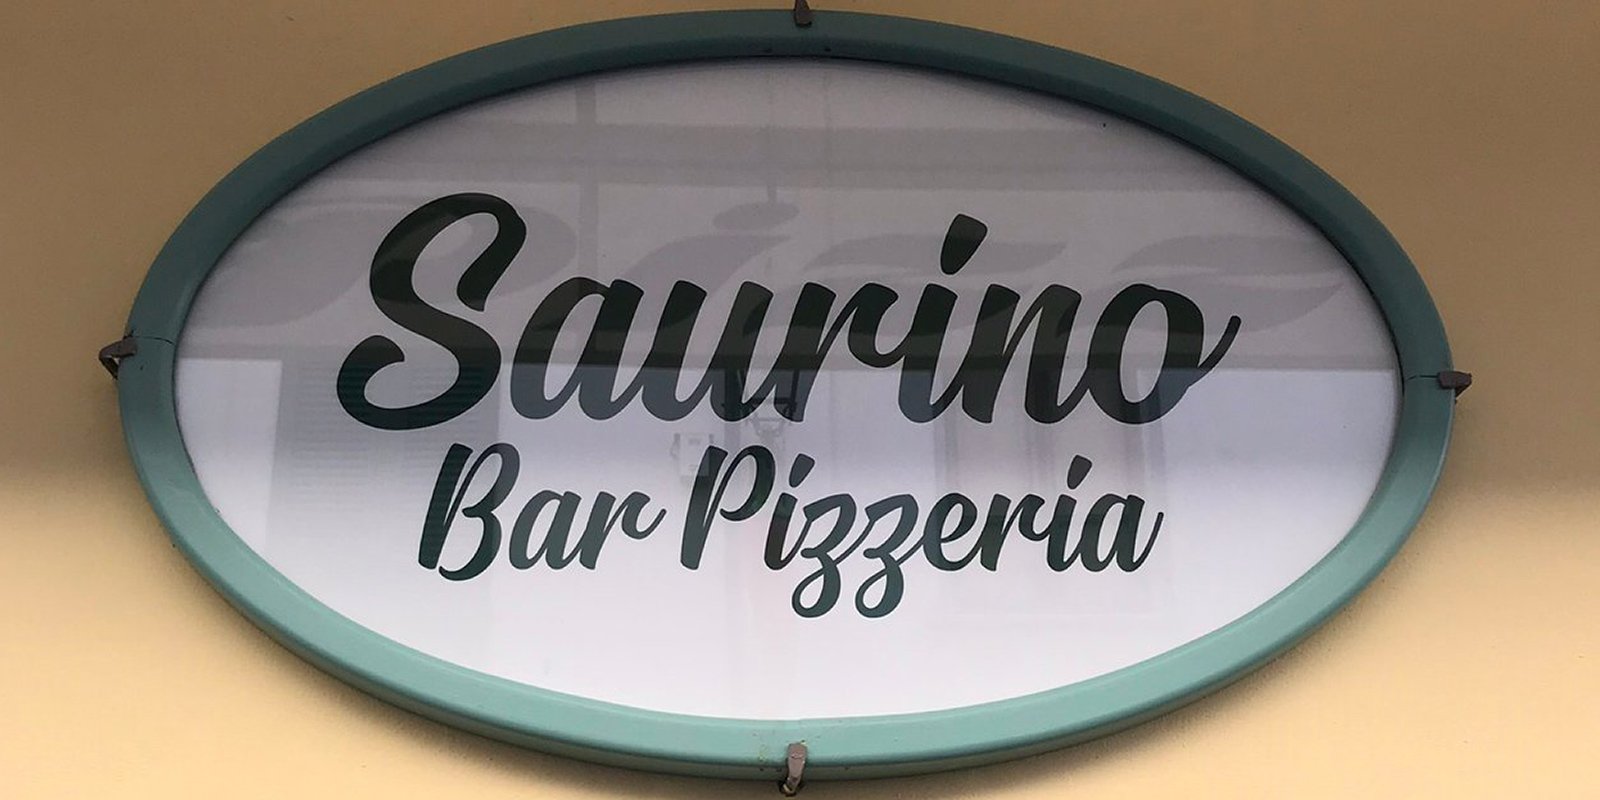 Pizzeria Saurino